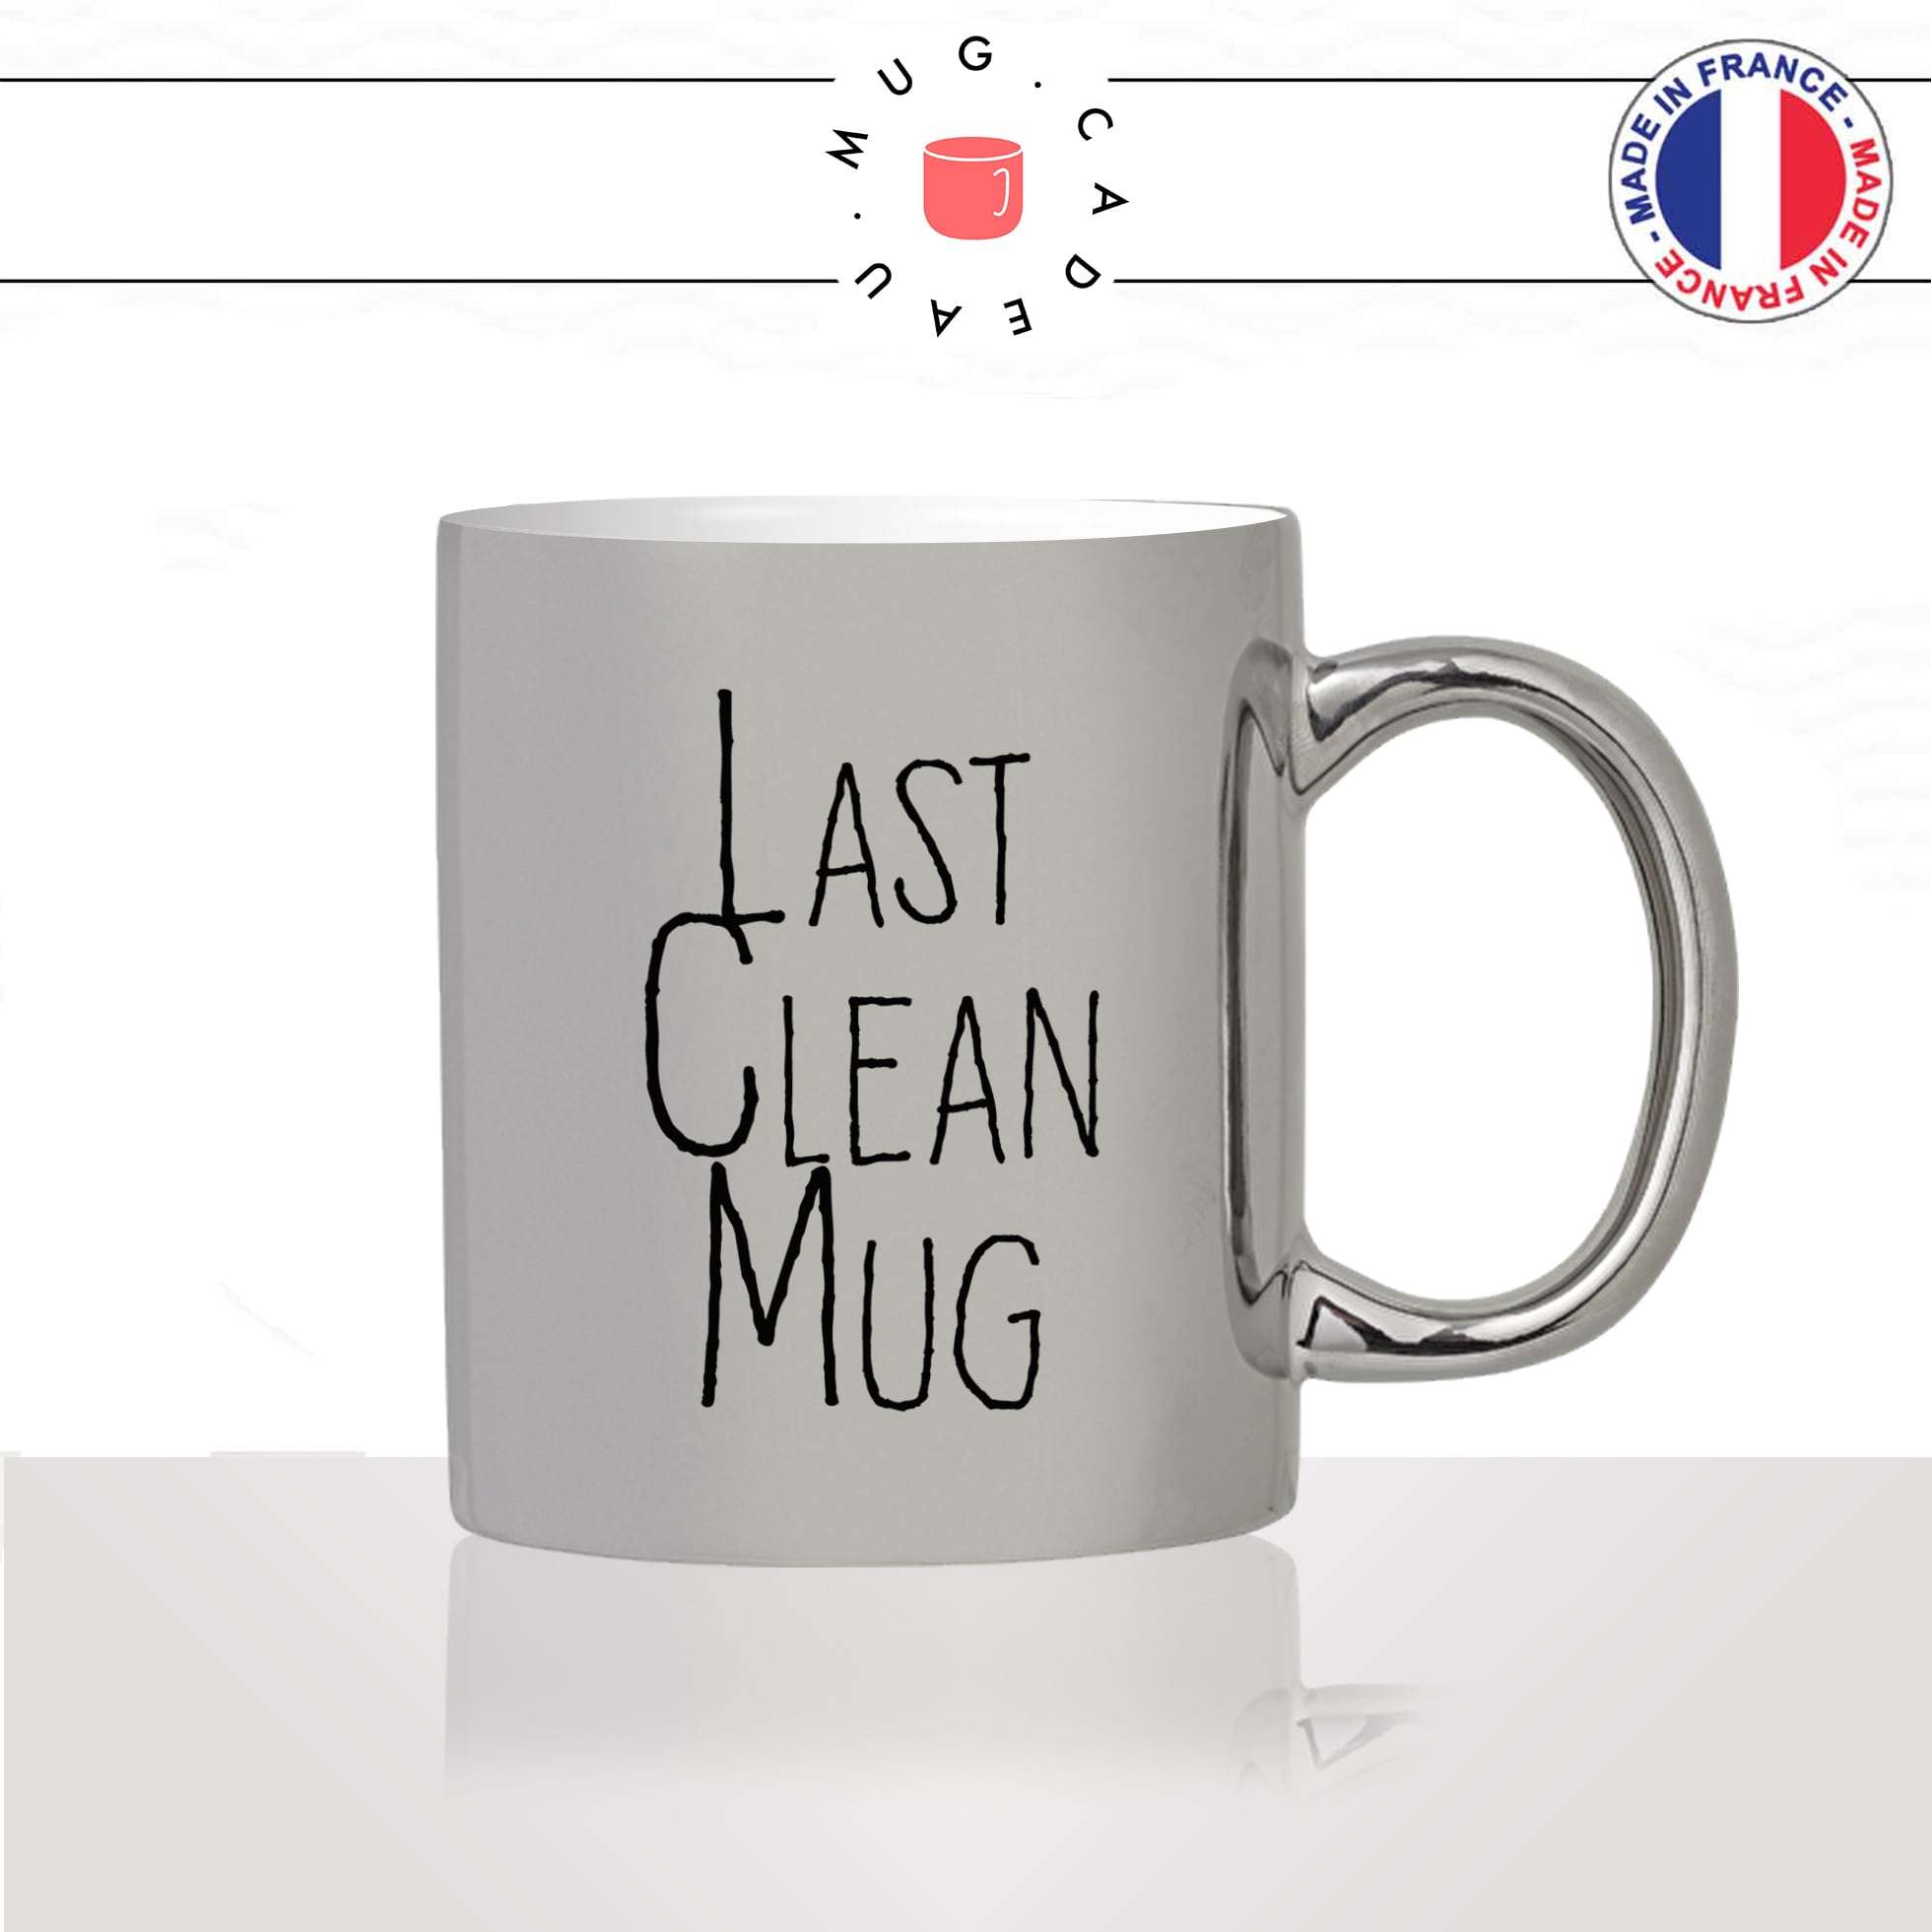 mug-tasse-argent-argenté-silver-last-clean-mugs-derniere-tasses-propre-humour-drole-collegue-couple-idée-cadeau-fun-cool-café-thé-original2-min